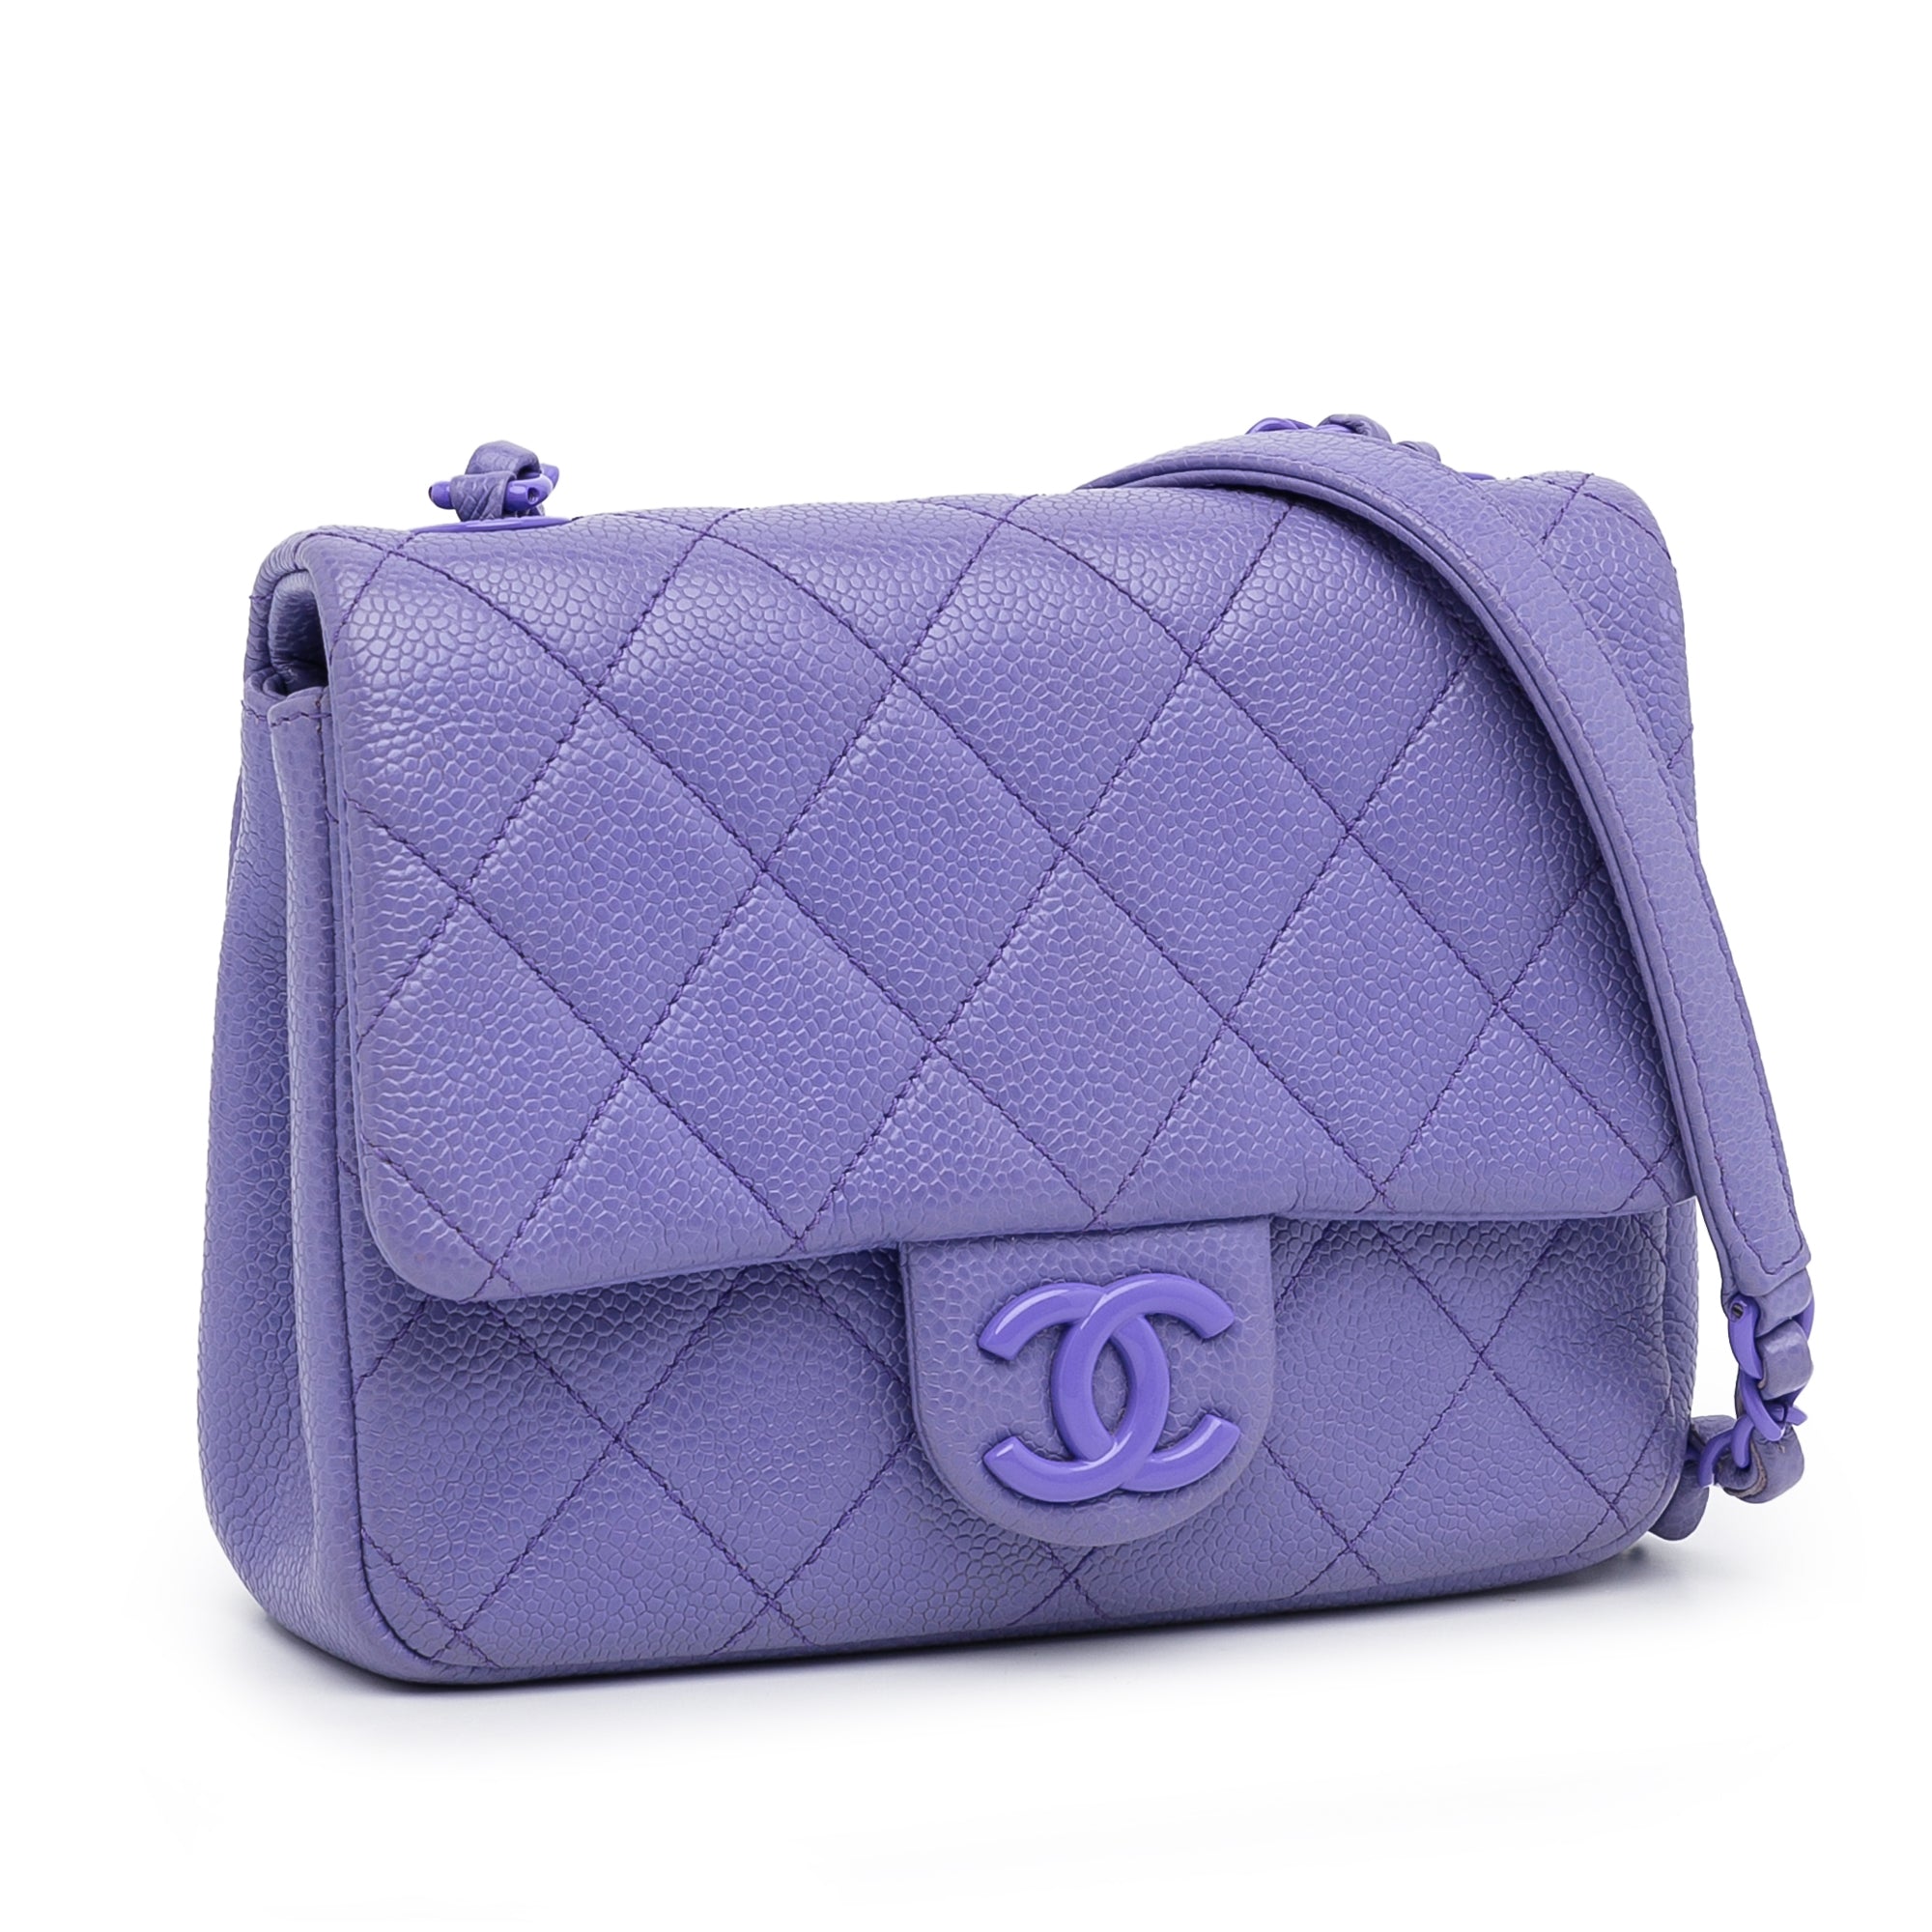 Purple Chanel Incognito Square Flap Bag